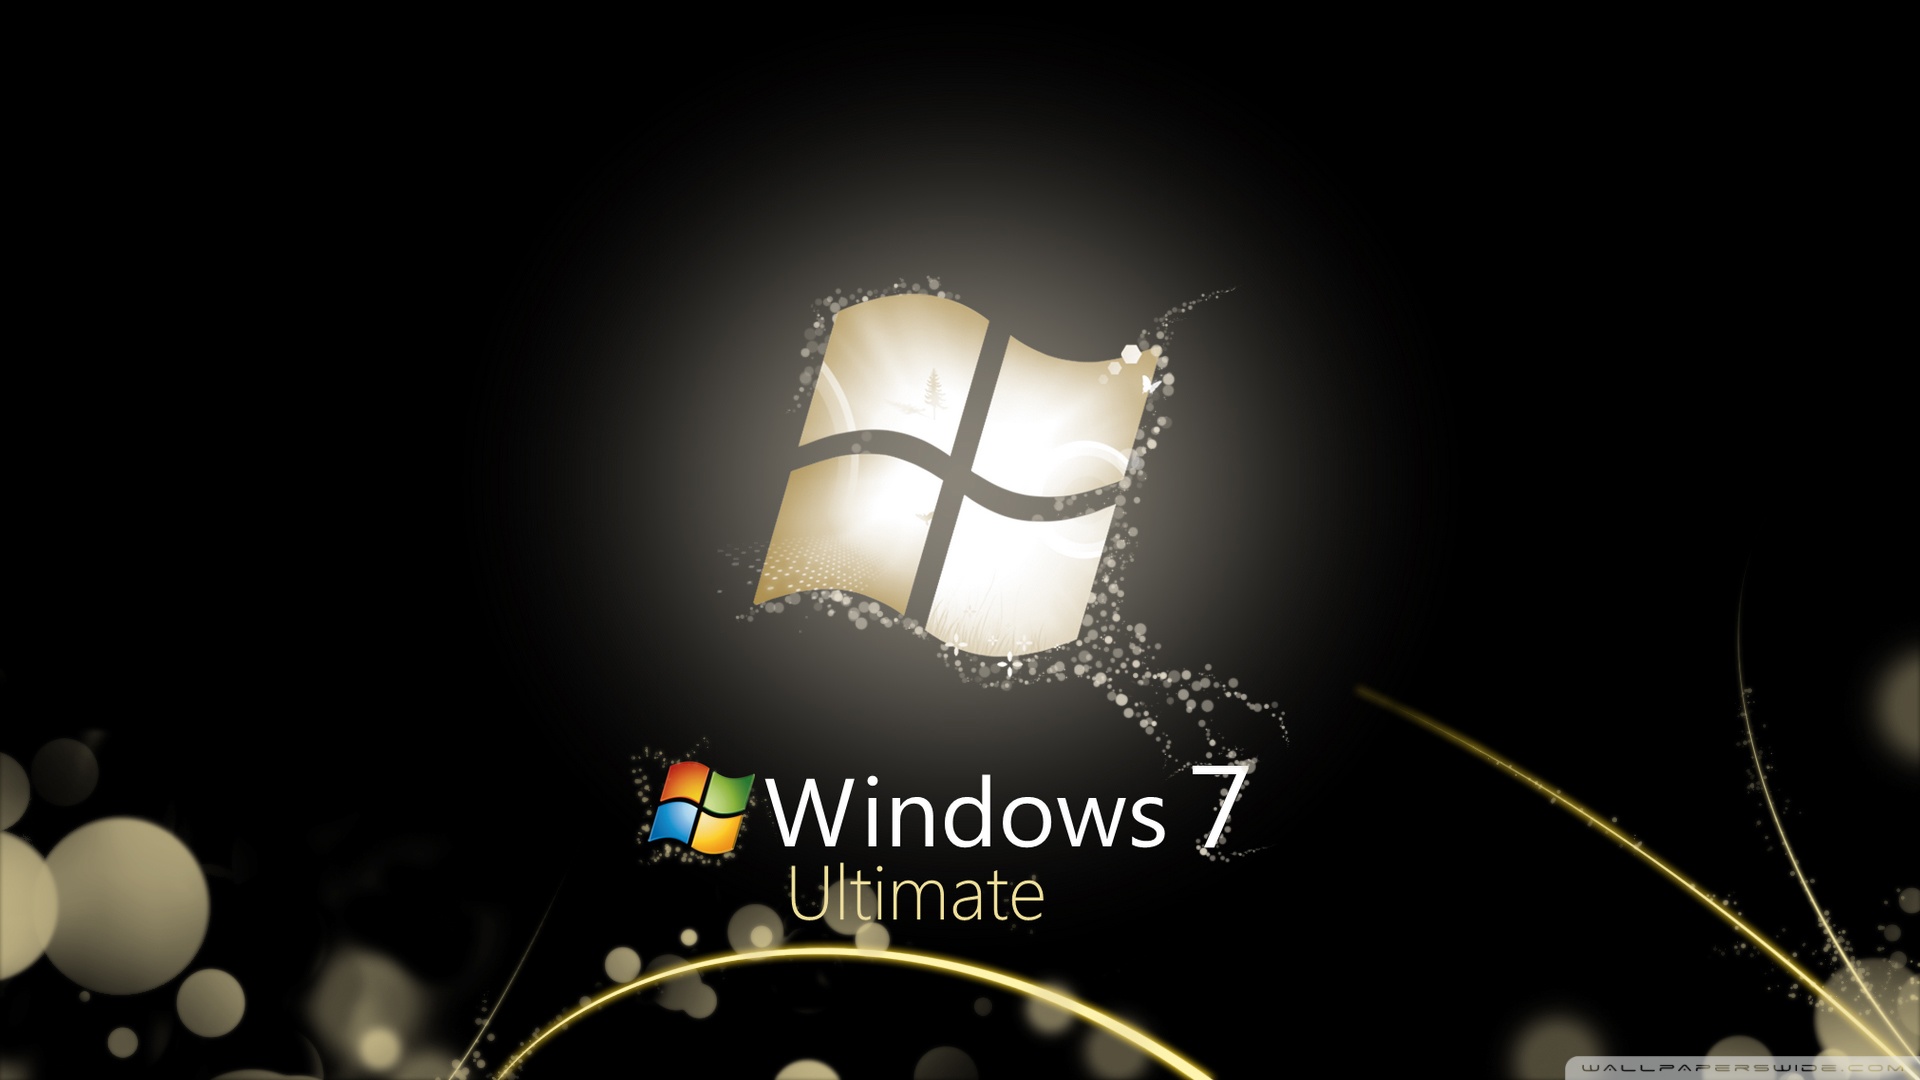 Hình nền Windows 7 HD: Khám phá bức hình nền Windows 7 HD đẹp mắt và nổi bật. Sắp xếp lại màn hình desktop của bạn bằng cách sử dụng hình nền này để tạo cảm giác mới mẻ và sinh động.